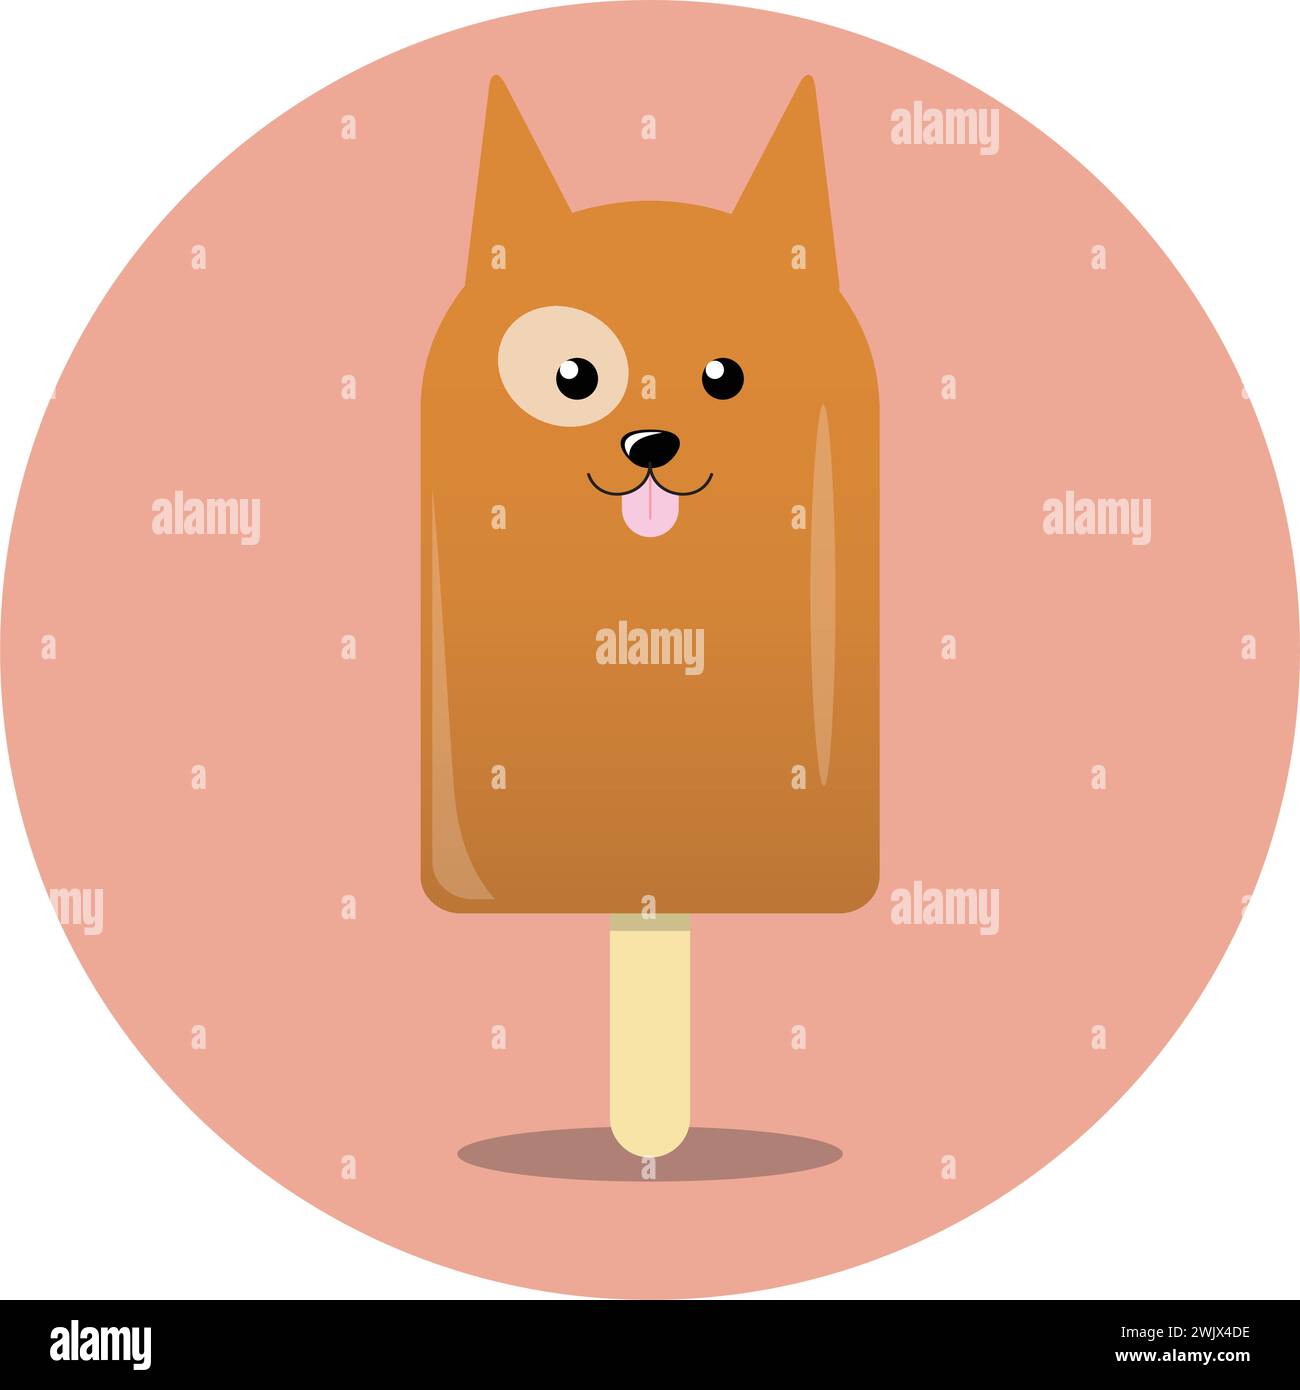 Hundeförmiges Eis, komplett mit Haselnussaugen und Schwanz, verleiht dem klassischen Sommergenuss eine unterhaltsame Note Stock Vektor